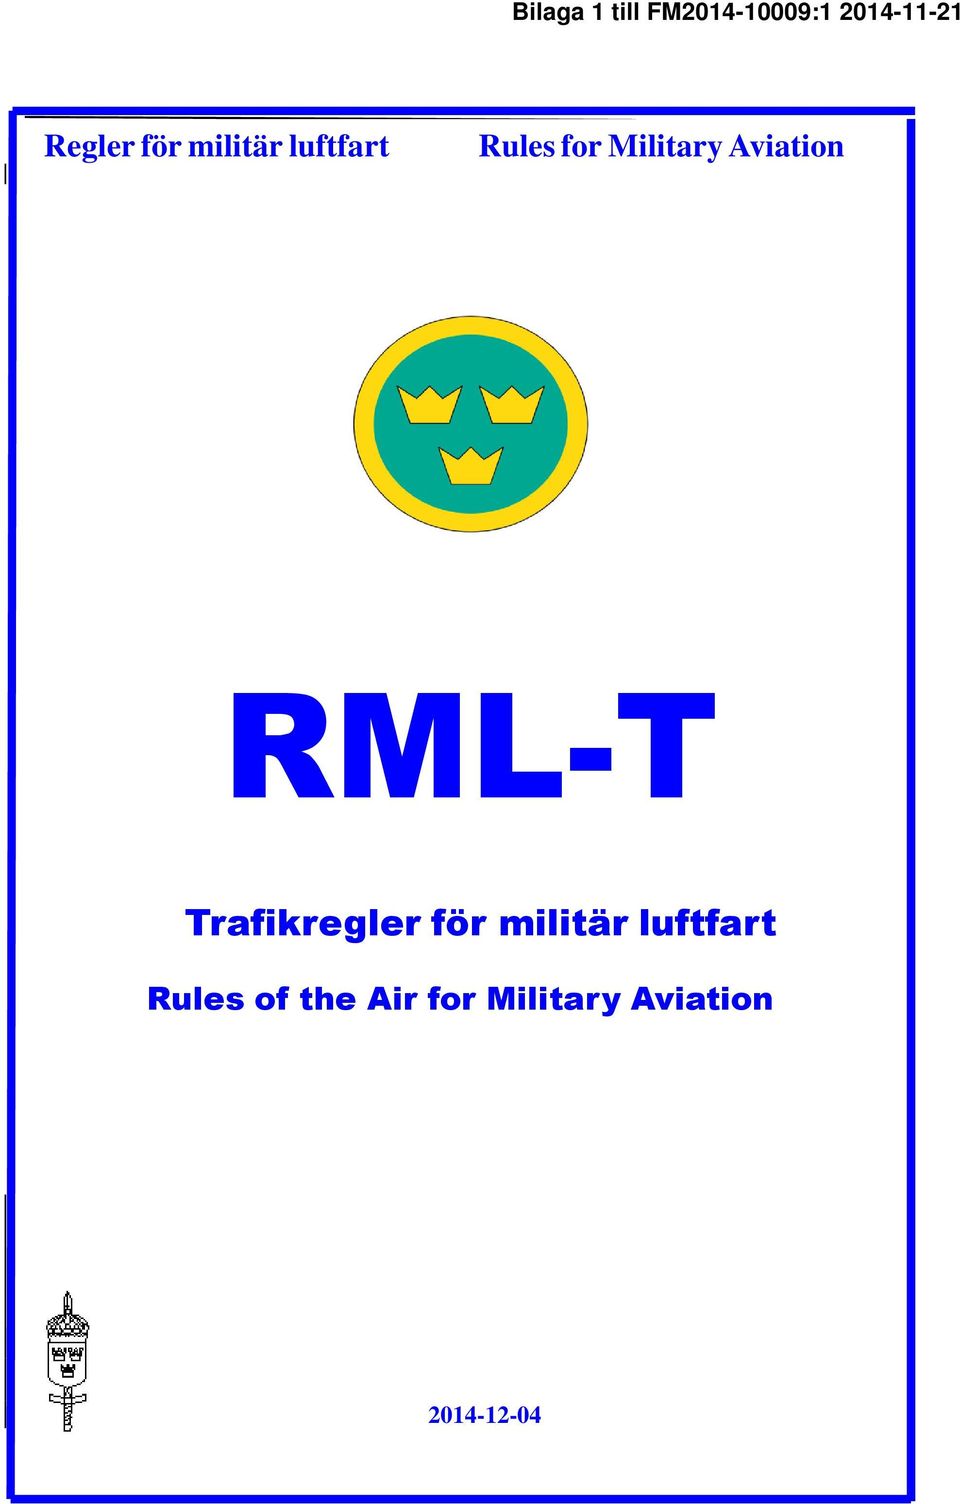 Trafikregler för militär luftfart